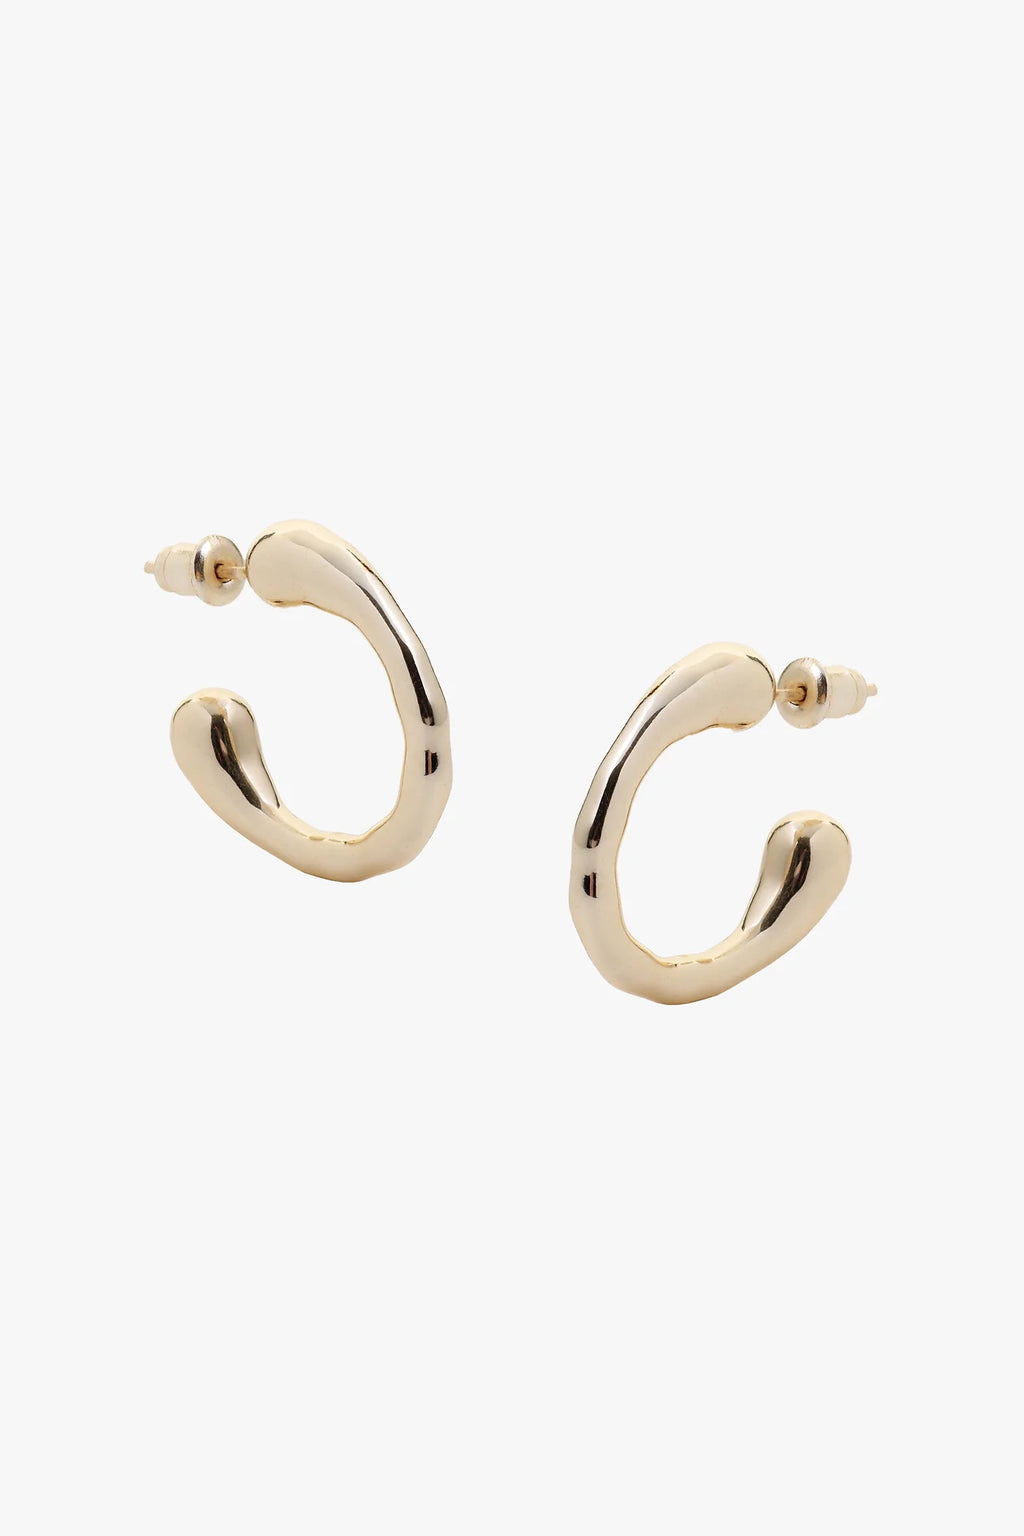 Tutti & Co Dew Earrings - Gold